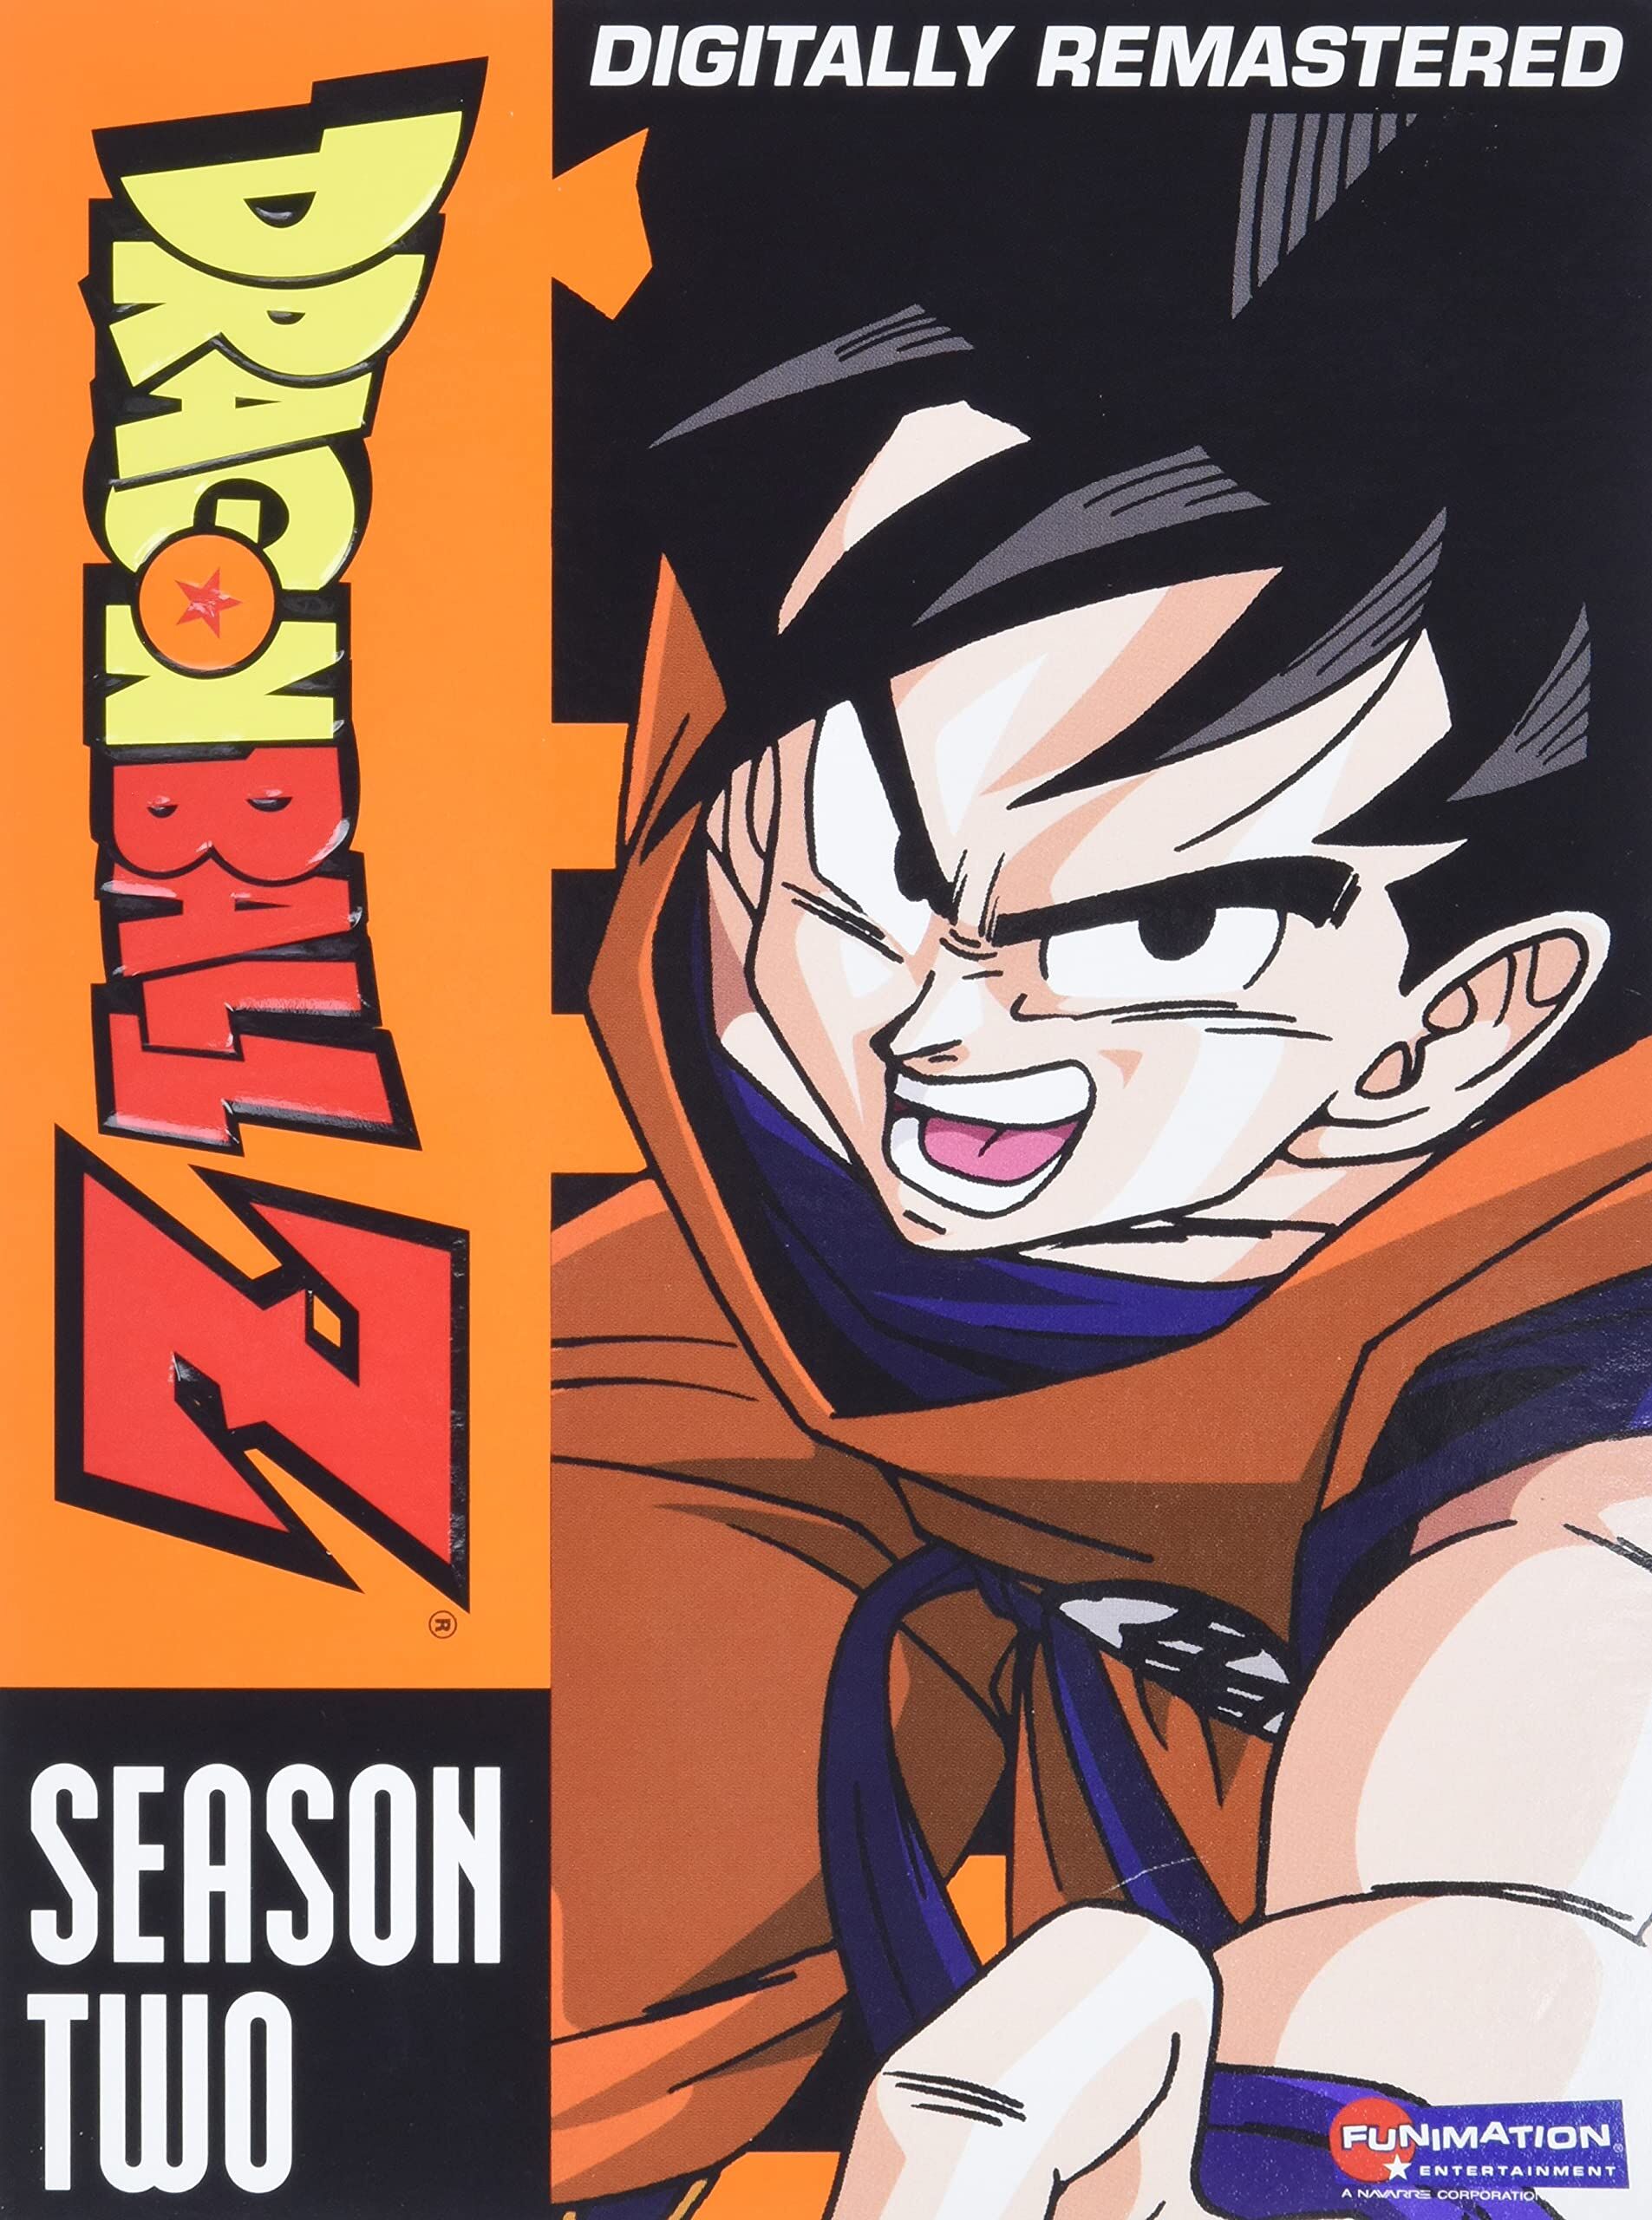 Dragon Ball Z (season 8) - Wikipedia